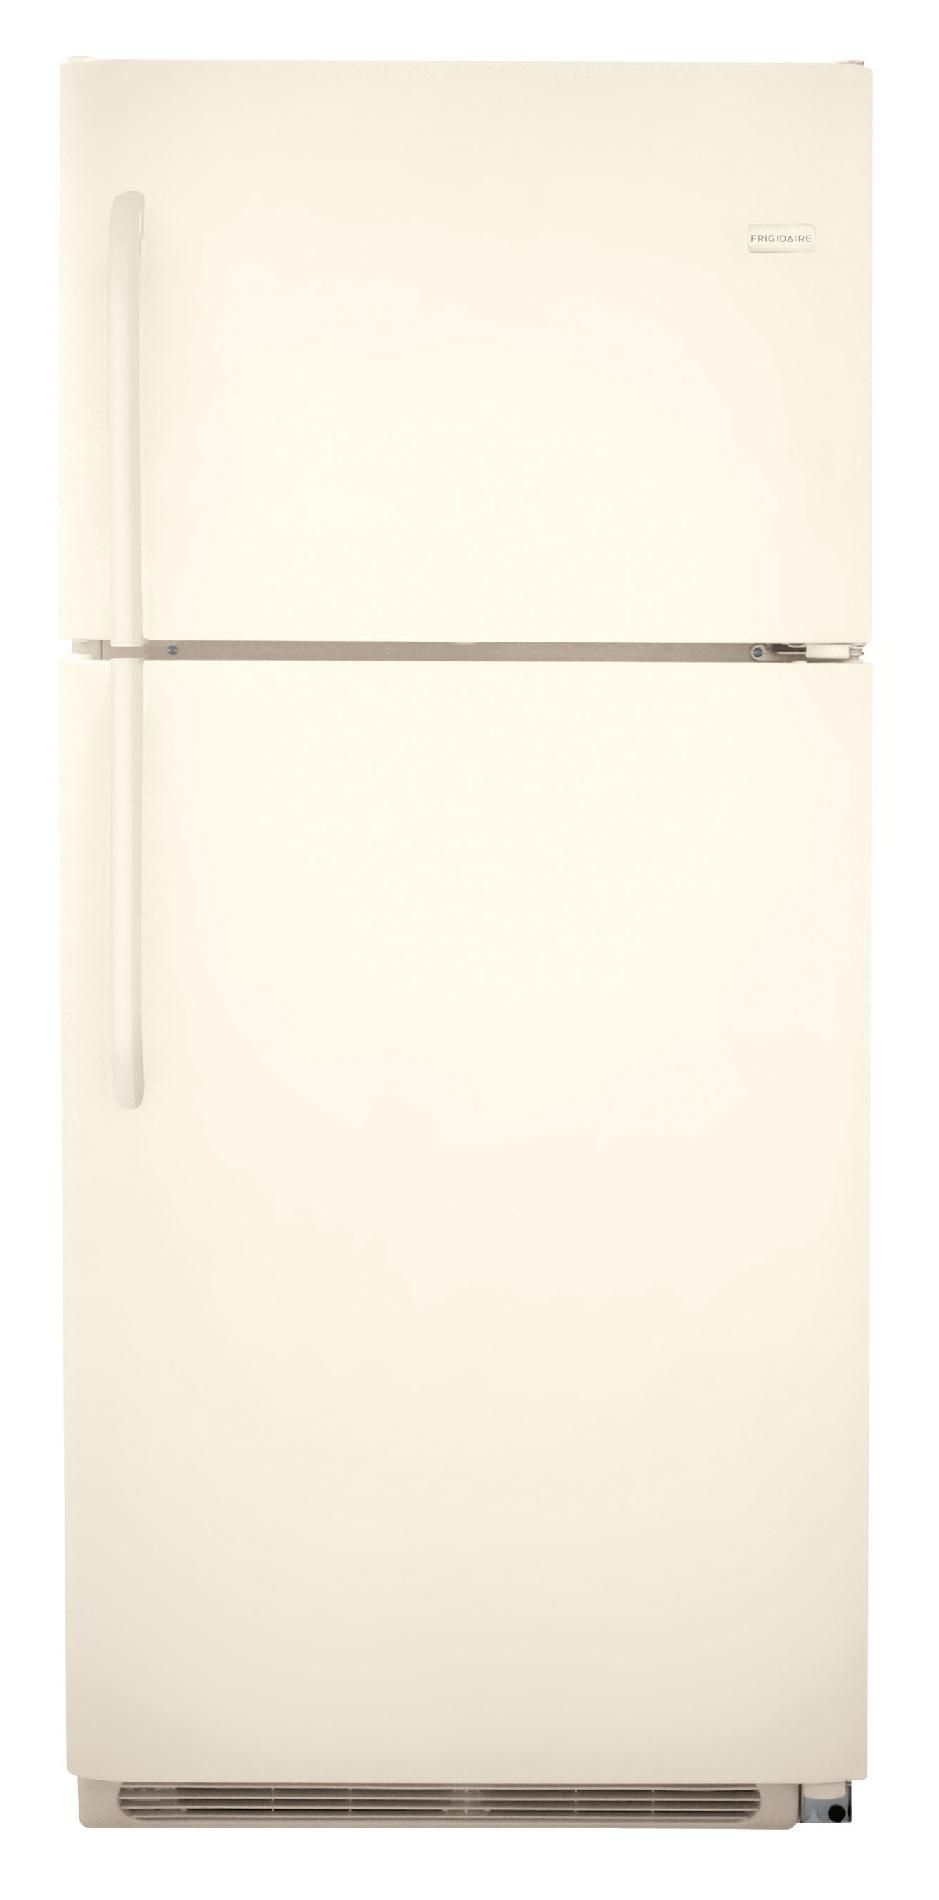 Frigidaire 20.6 cu. ft Top-Freezer Refrigerator - Bisque